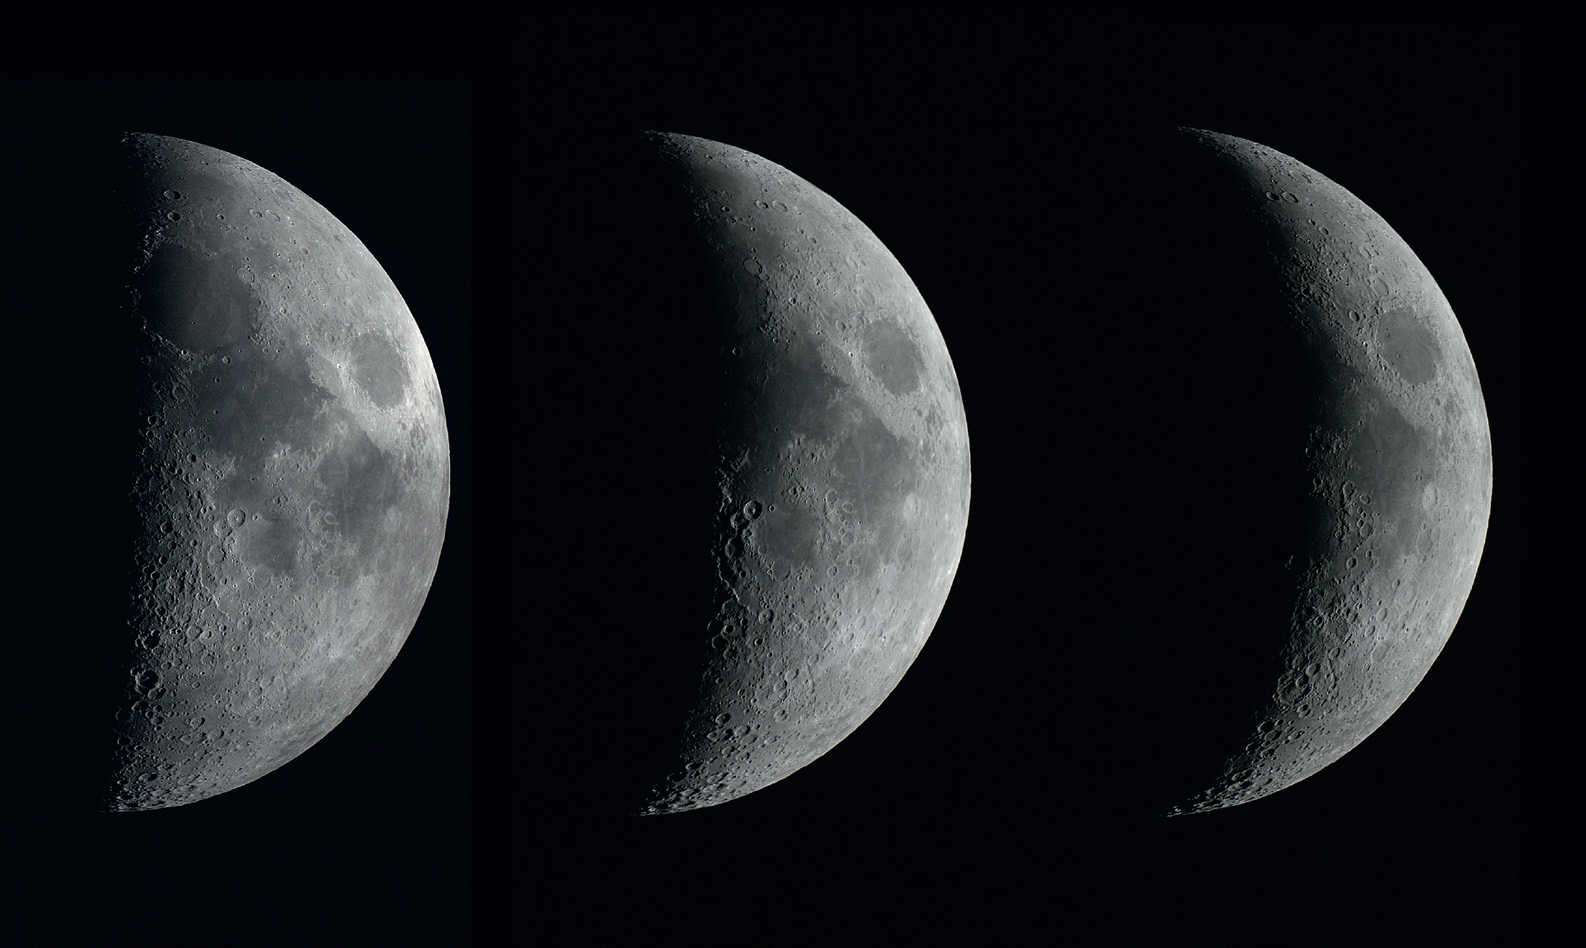 Le fasi della Luna calante in tre giorni consecutivi. Le immagini sono state ottenute con una DSLR di tipo Canon 450D su un rifrattore con 102 mm di apertura e 1000 mm di lunghezza focale, a un giorno di distanza l’una dall’altra. U. Dittler